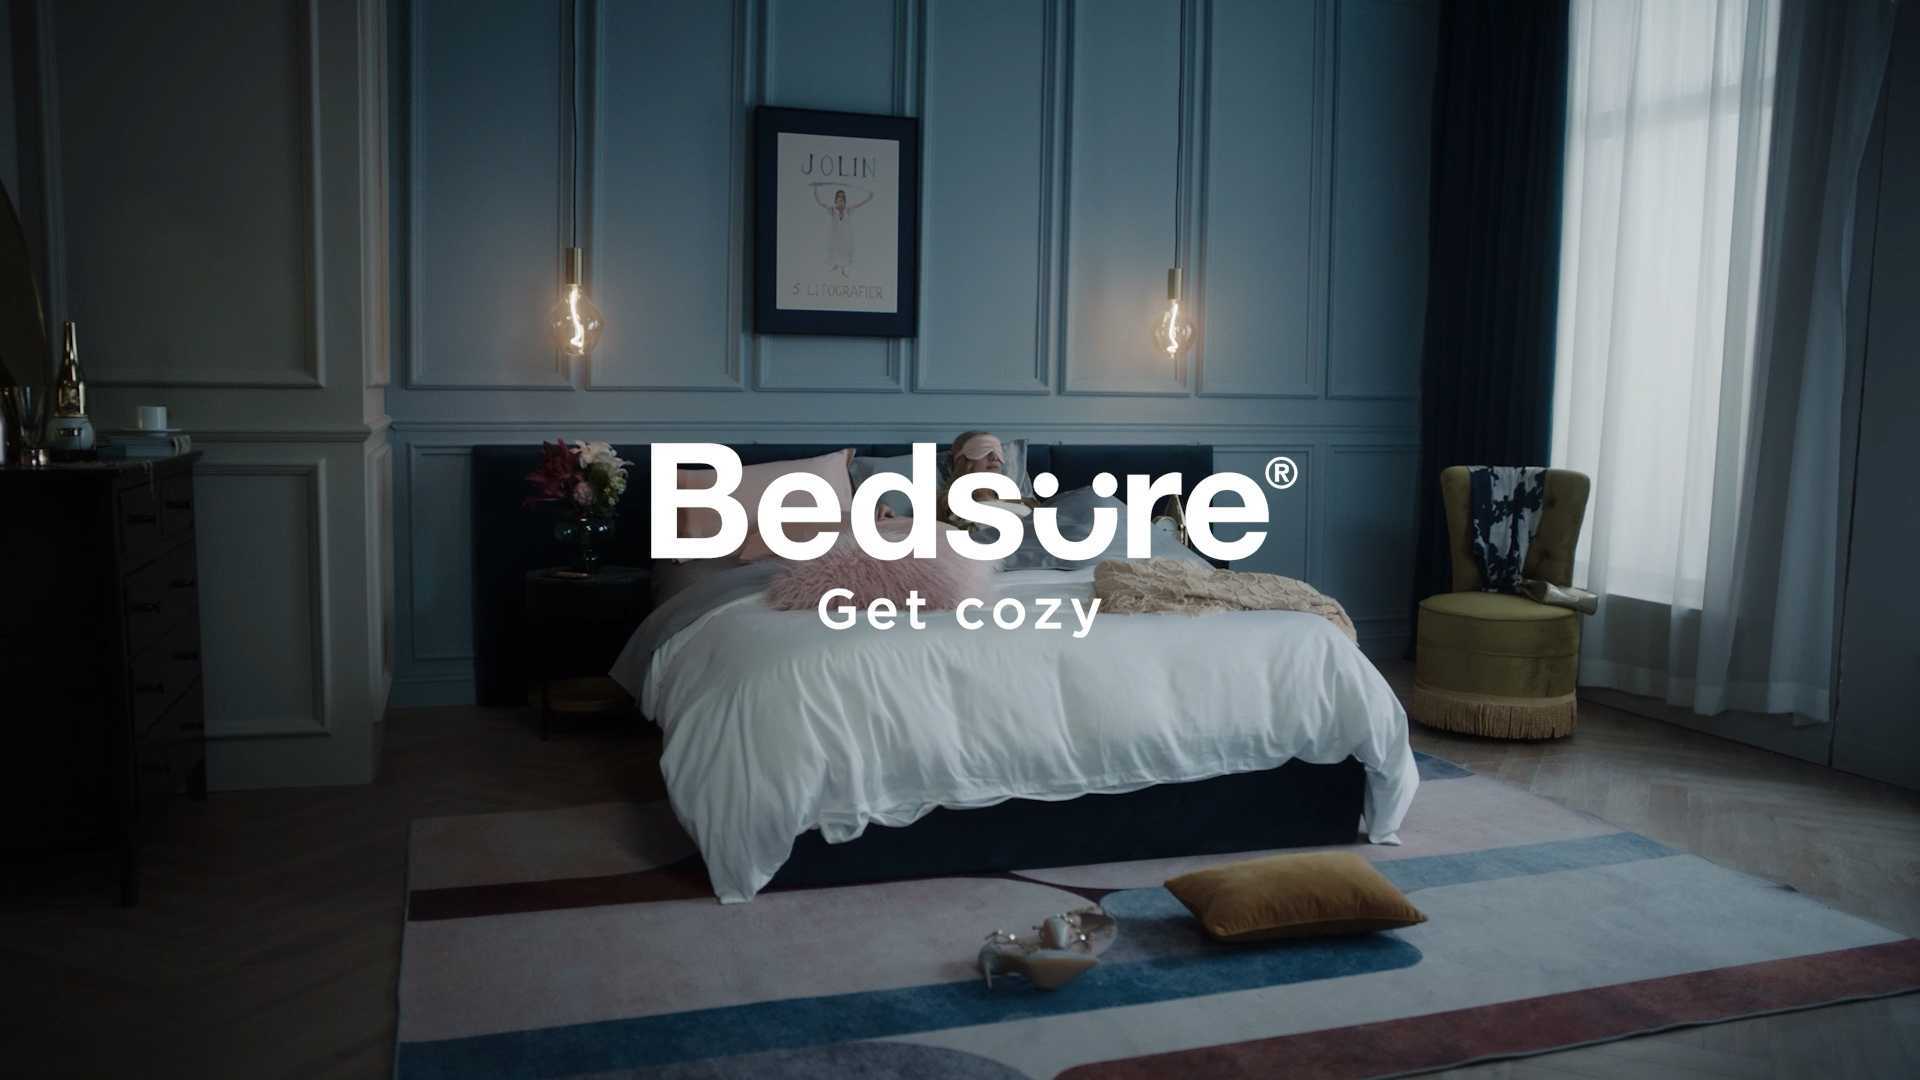 Bedsure Collection 2021 Amazon 电视广告